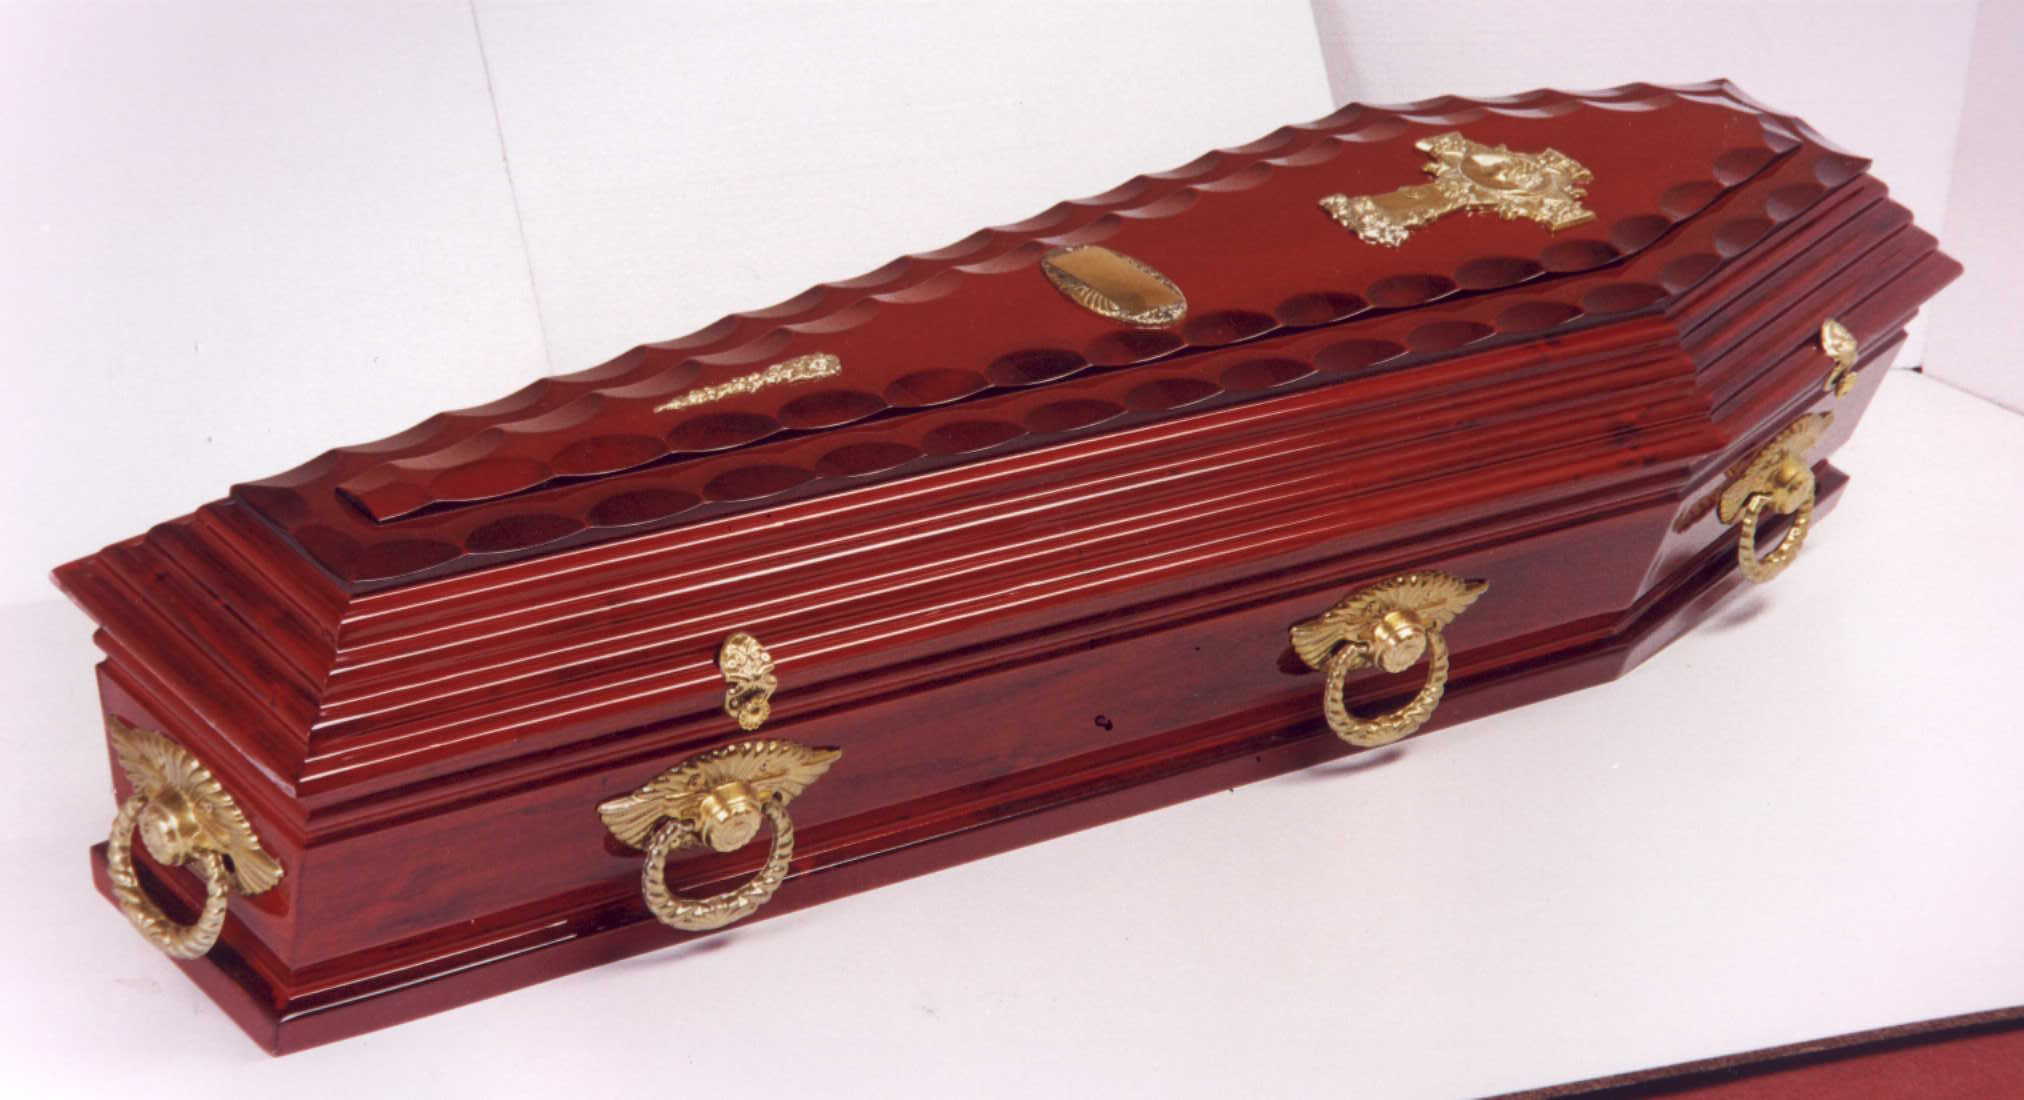 Belgrano Coffin